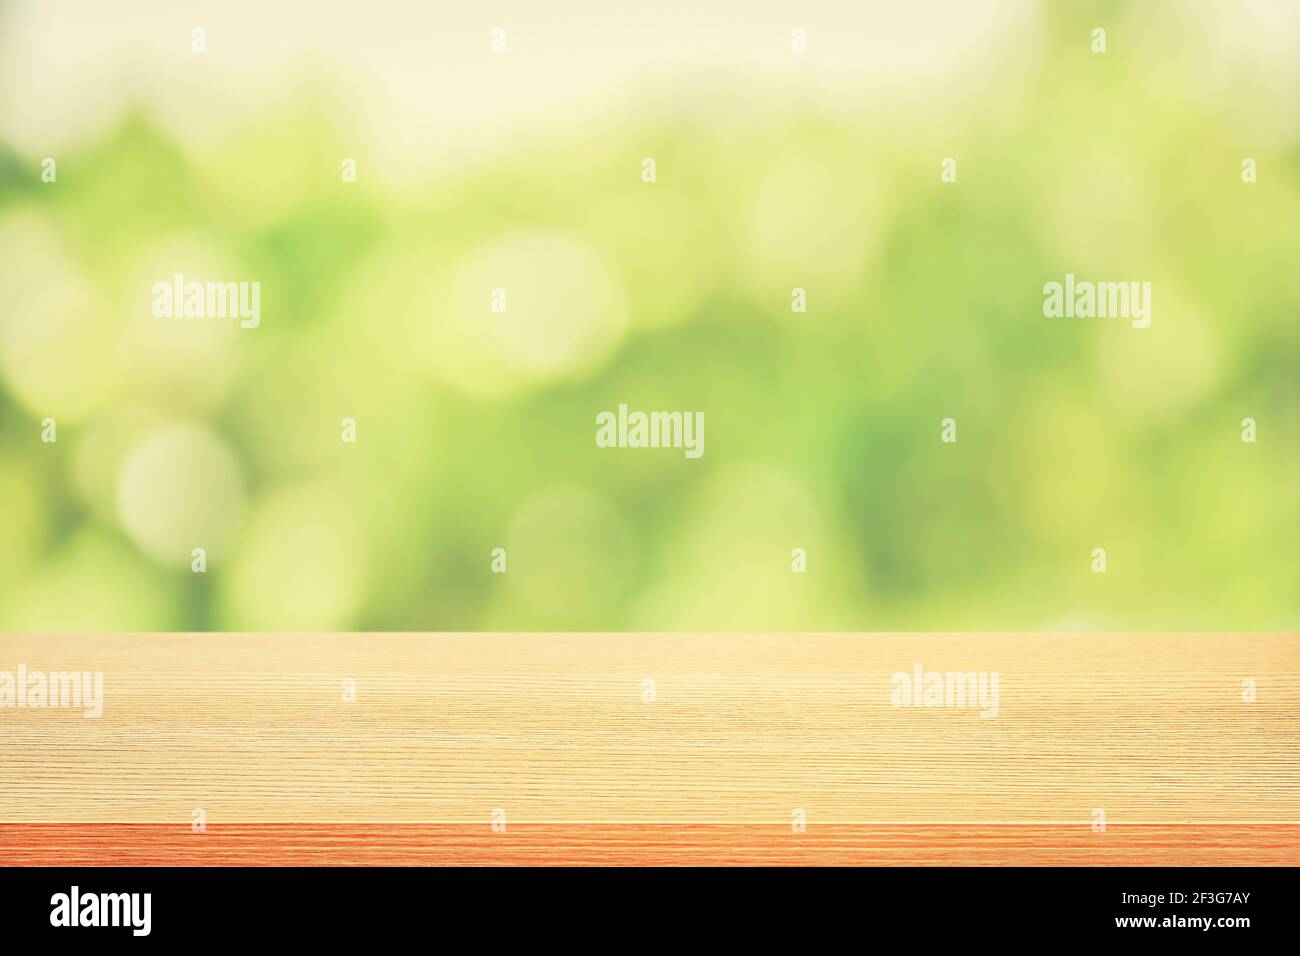 Holztischplatte auf grünem Bokeh abstrakter Hintergrund, weicher Ton - kann für Montage oder Anzeige Ihrer Produkte verwendet werden Stockfoto